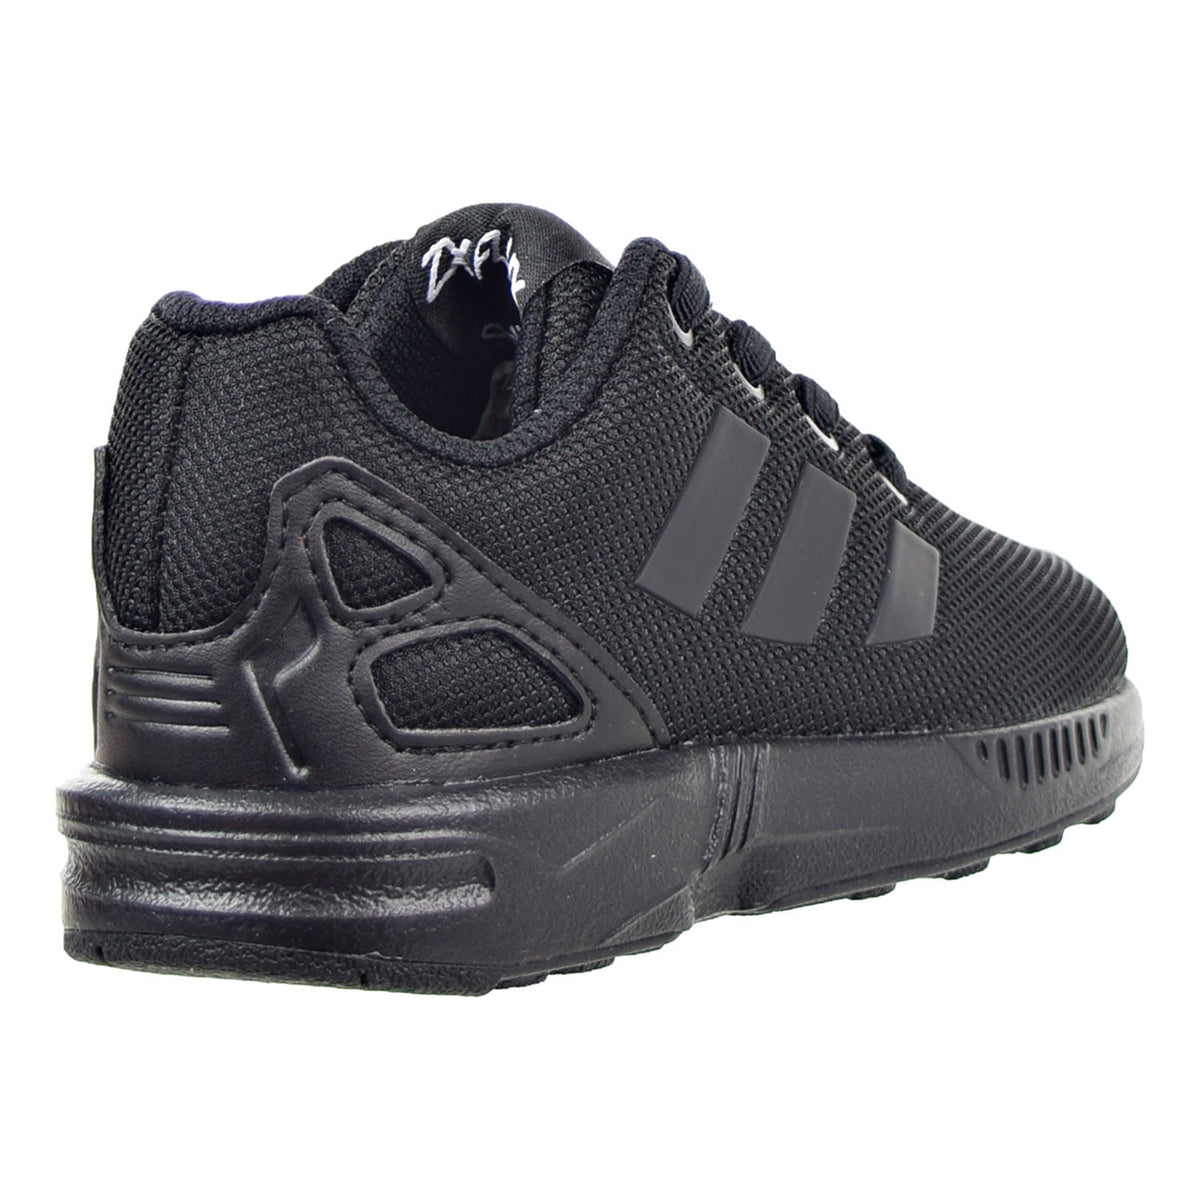 Adidas ZX Flux I Toddler Shoes Black/Black/Black